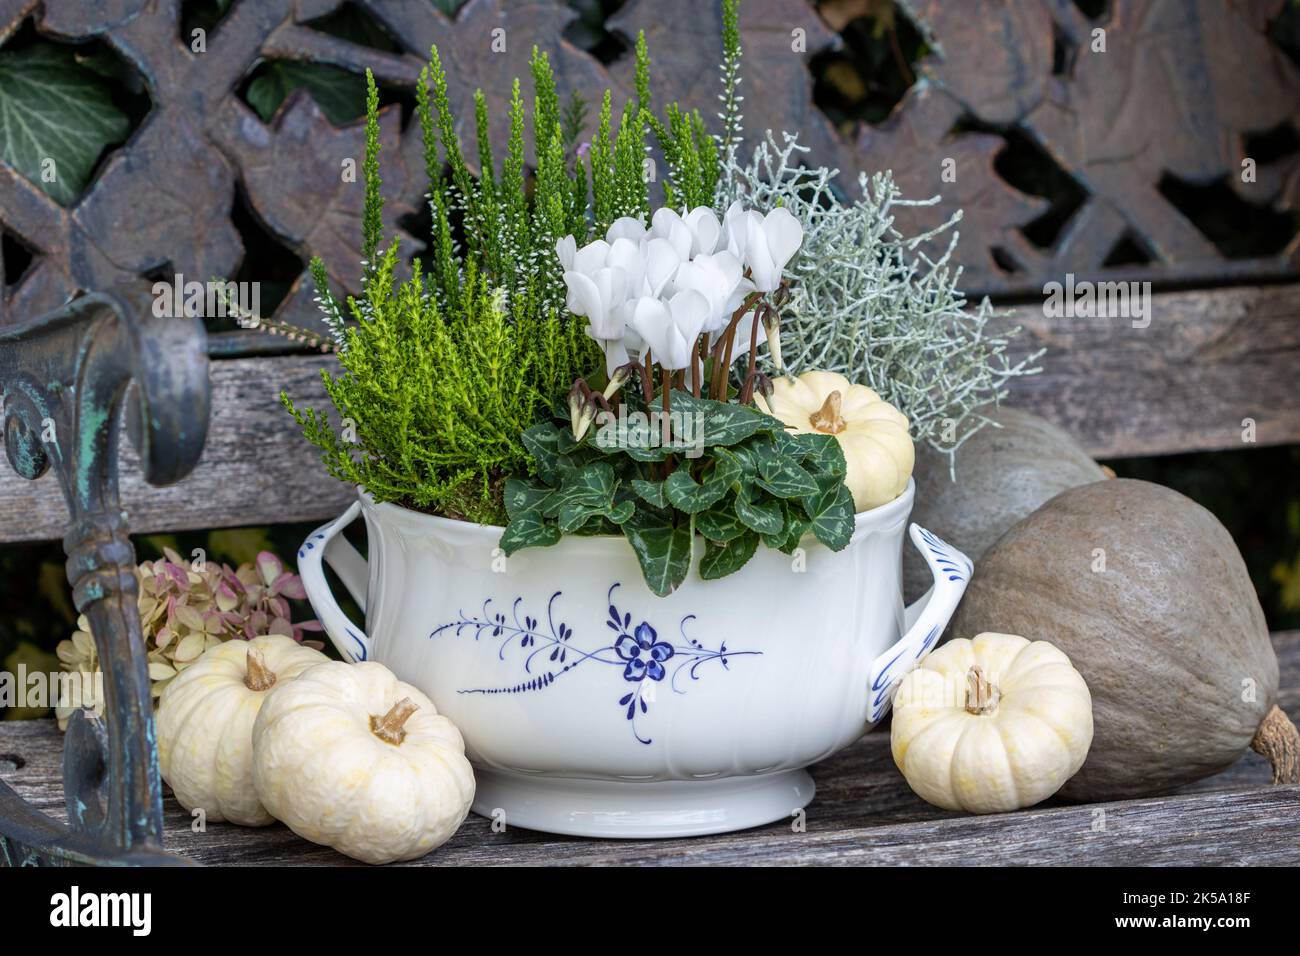 cyclamen blanc, plante barbelée, arbuste veronica et bruyère dans une soupe reen comme arrangement floral d'automne Banque D'Images